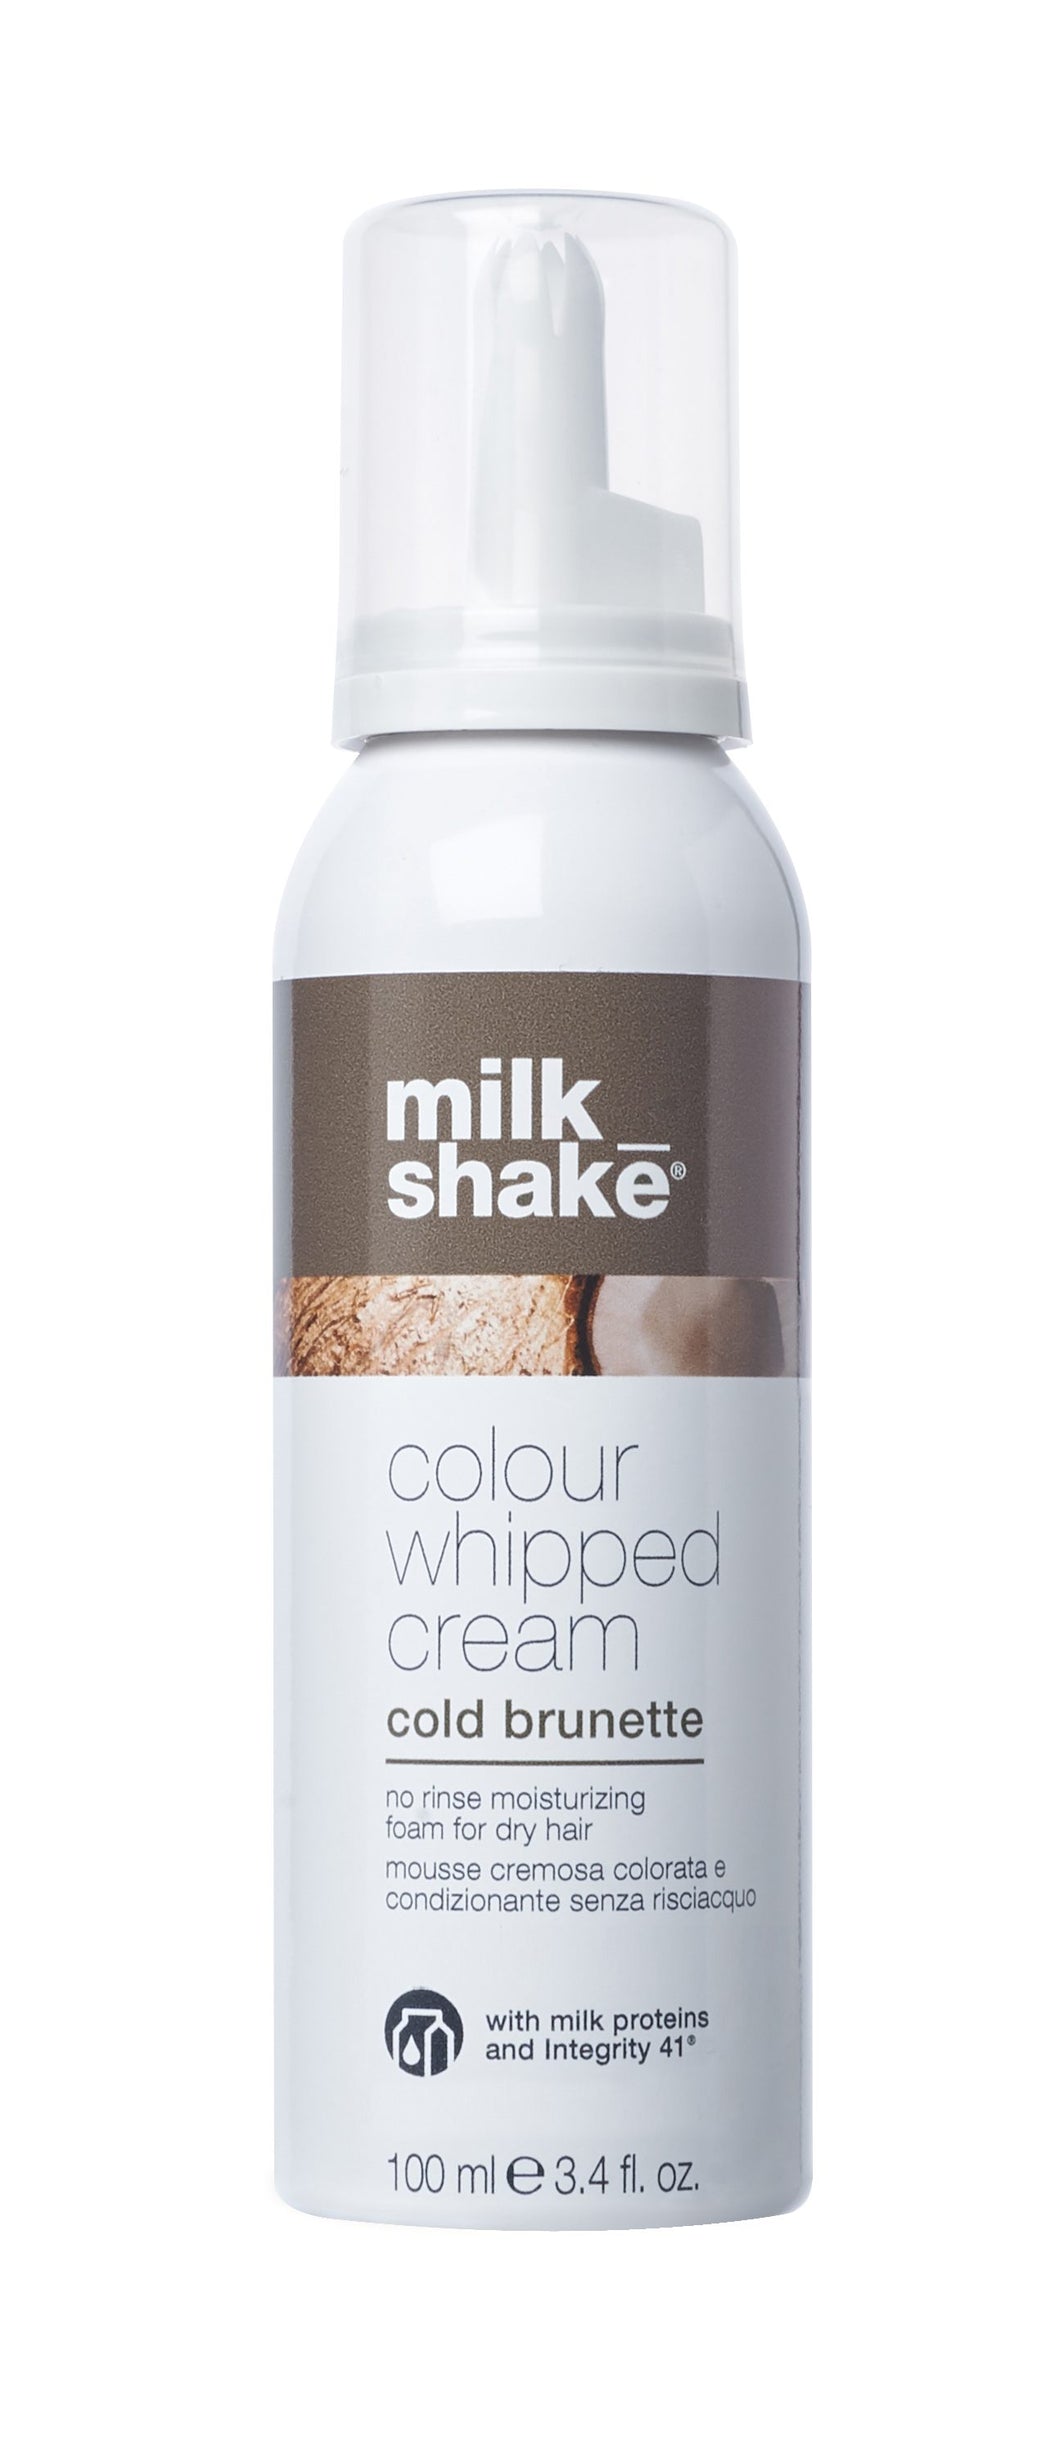 milk_shake colour whipped cream cold brunette